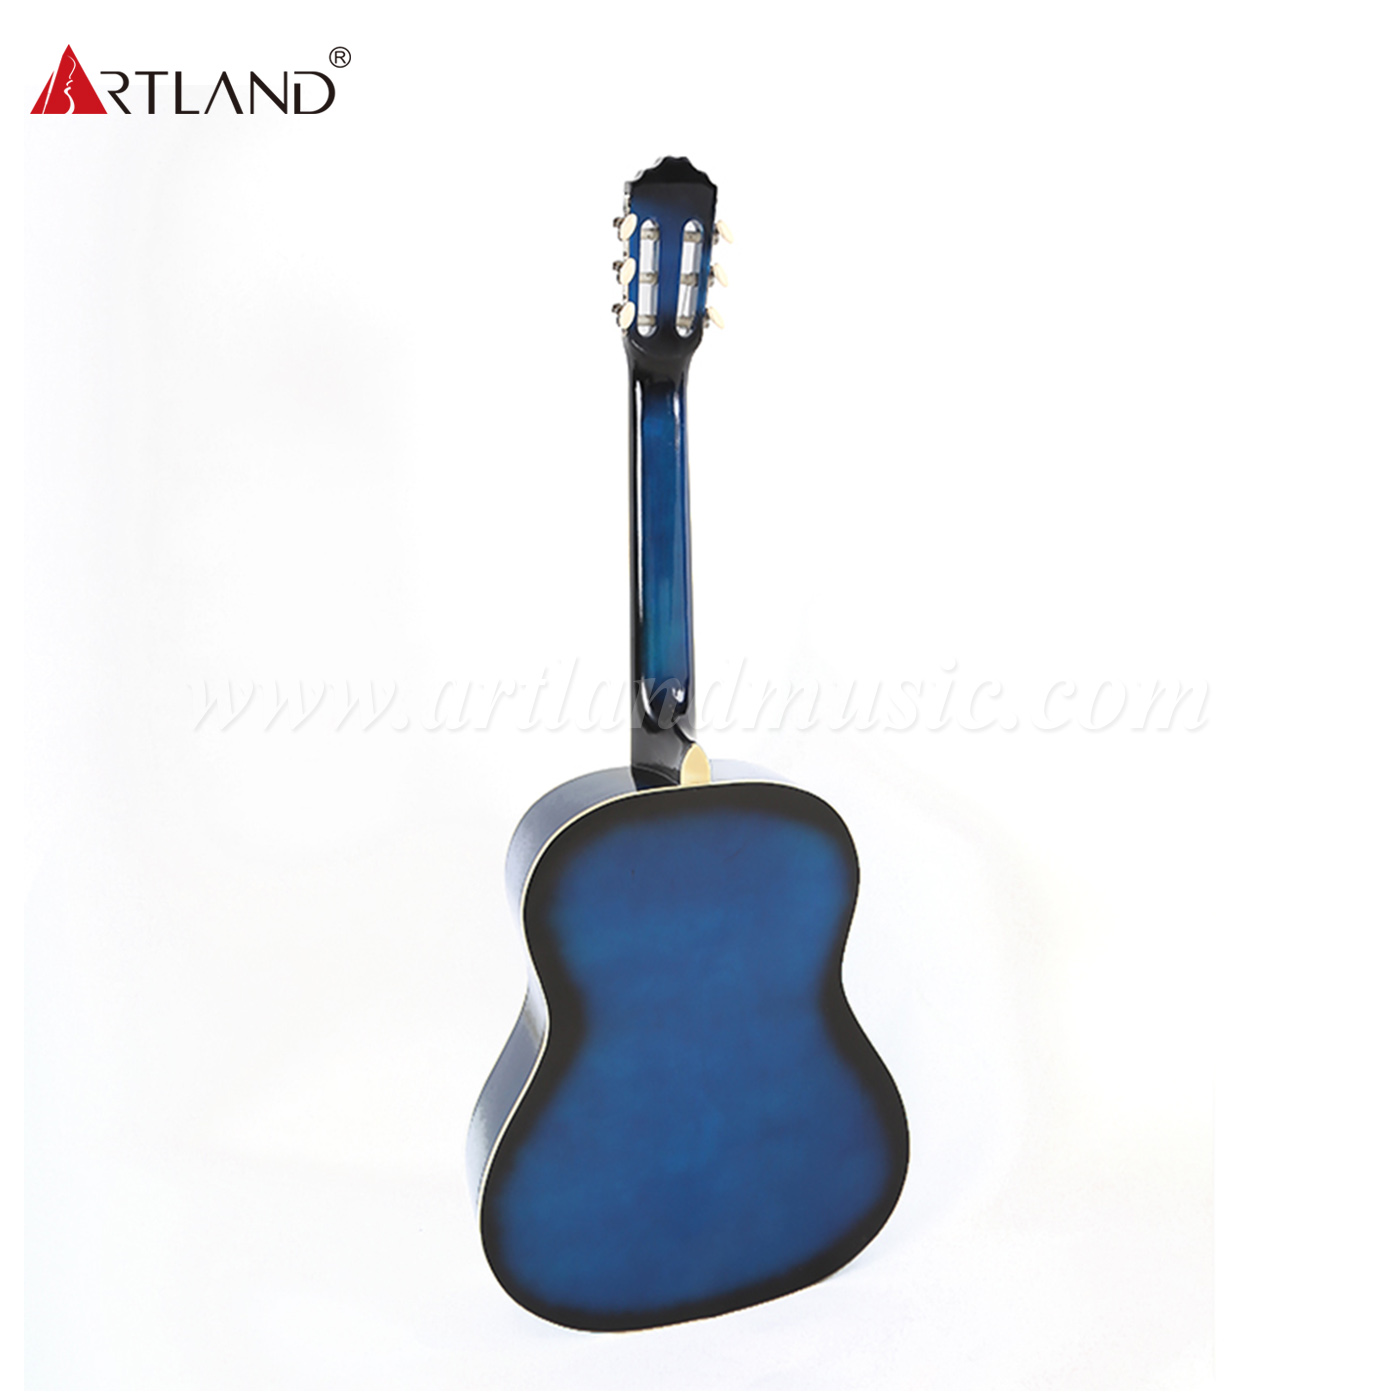 Artland Guitar Linden Top Back&Side Classic Guitar (CG852)